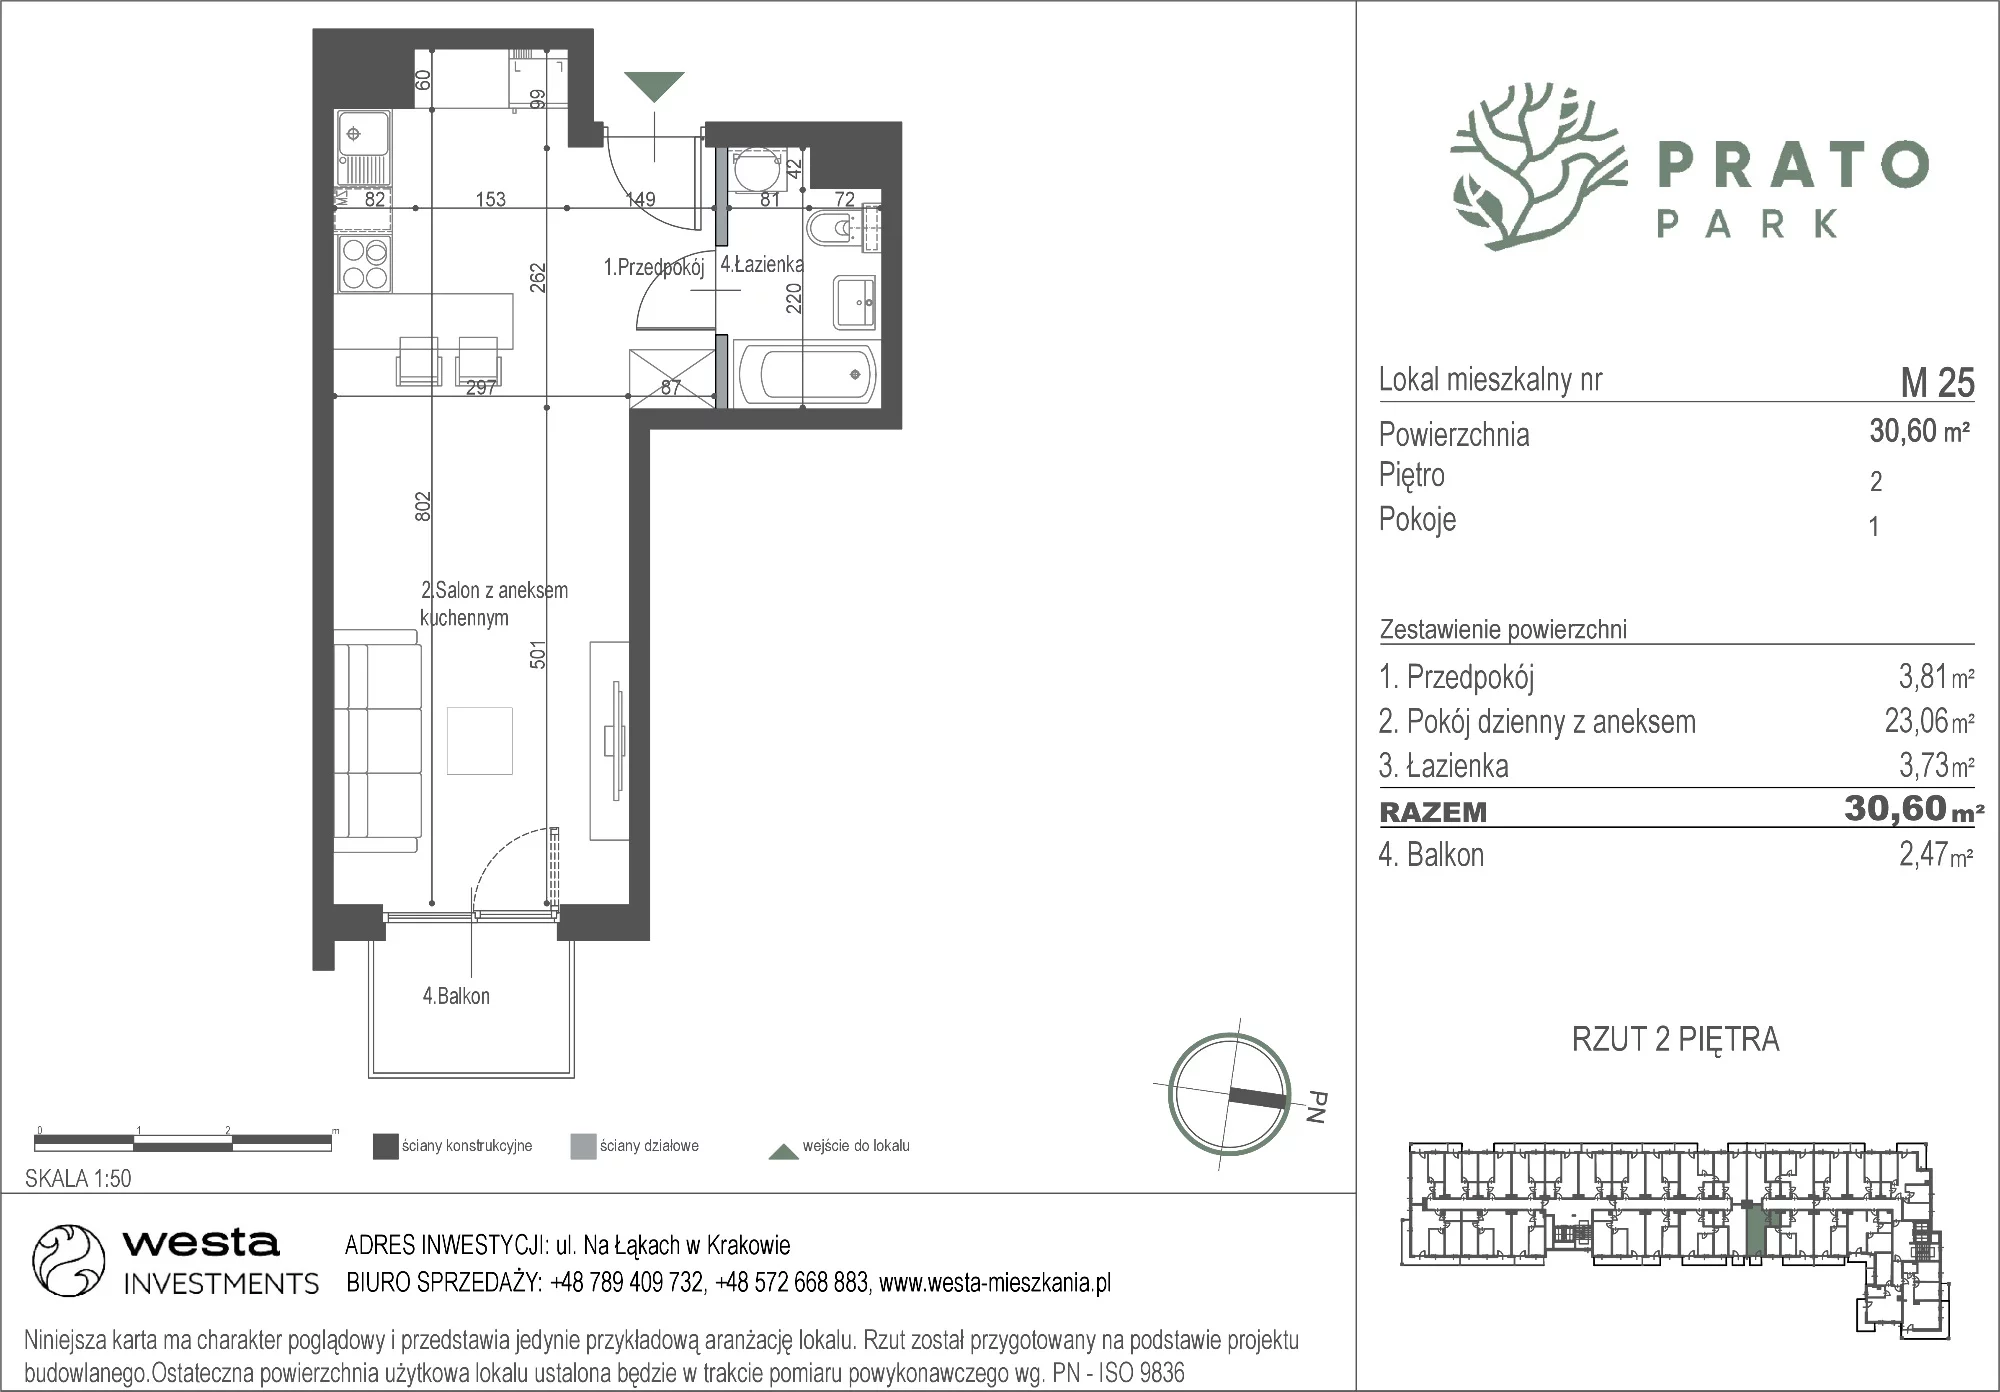 Mieszkanie 30,60 m², piętro 2, oferta nr M25, Prato Park, Kraków, Czyżyny, ul. Na Łąkach